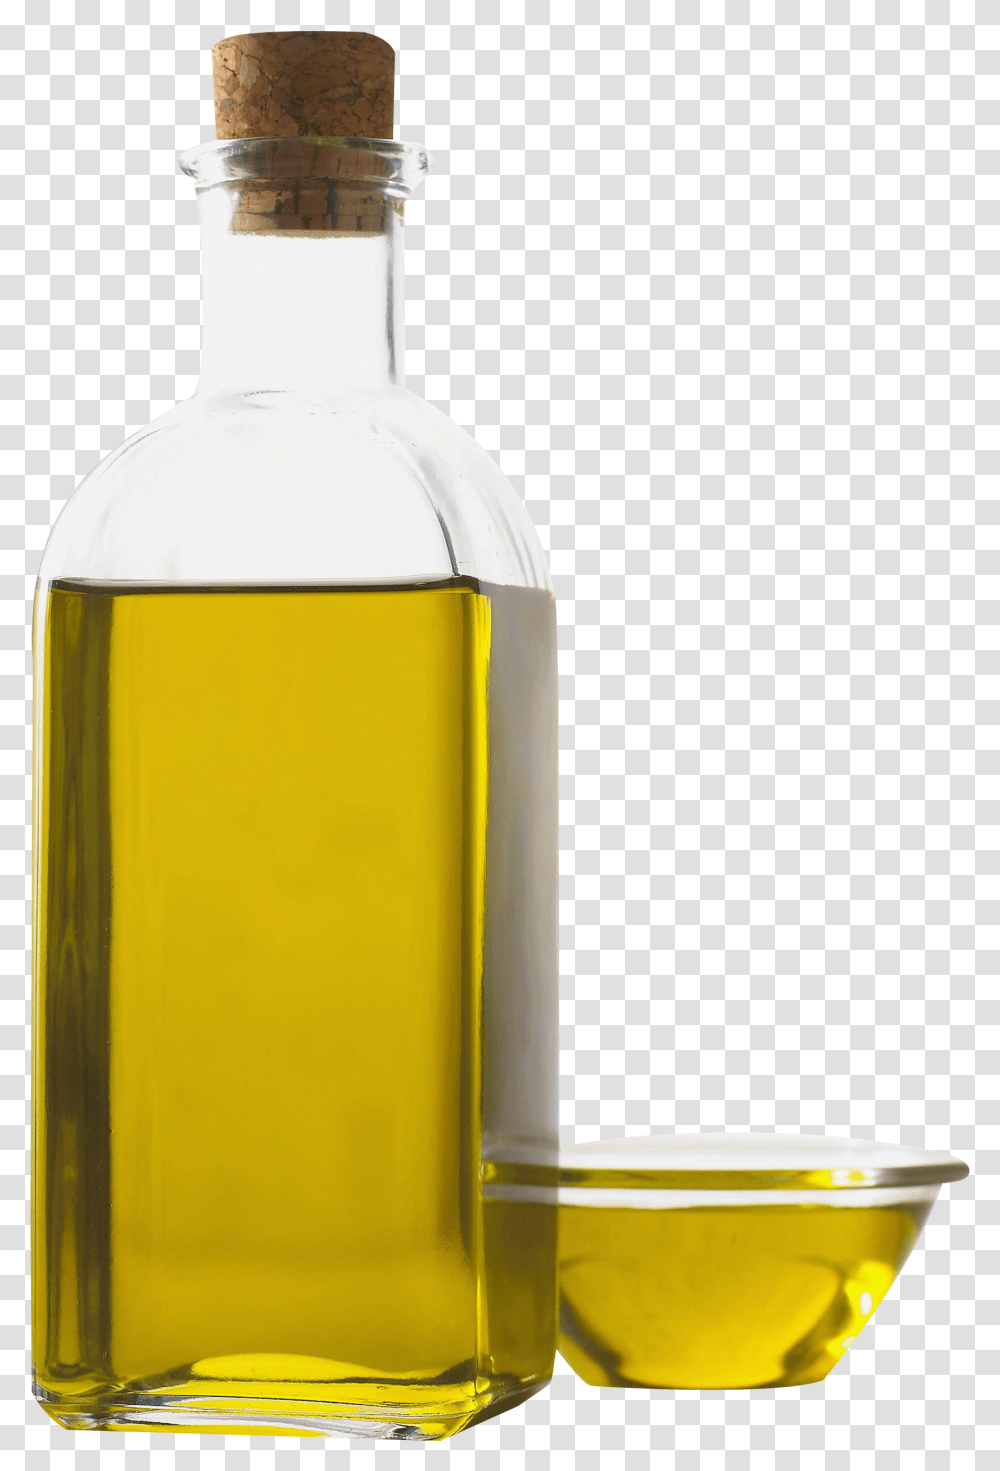 Olive Oil Image Oil Bottle, Milk, Beverage, Drink, Alcohol Transparent Png